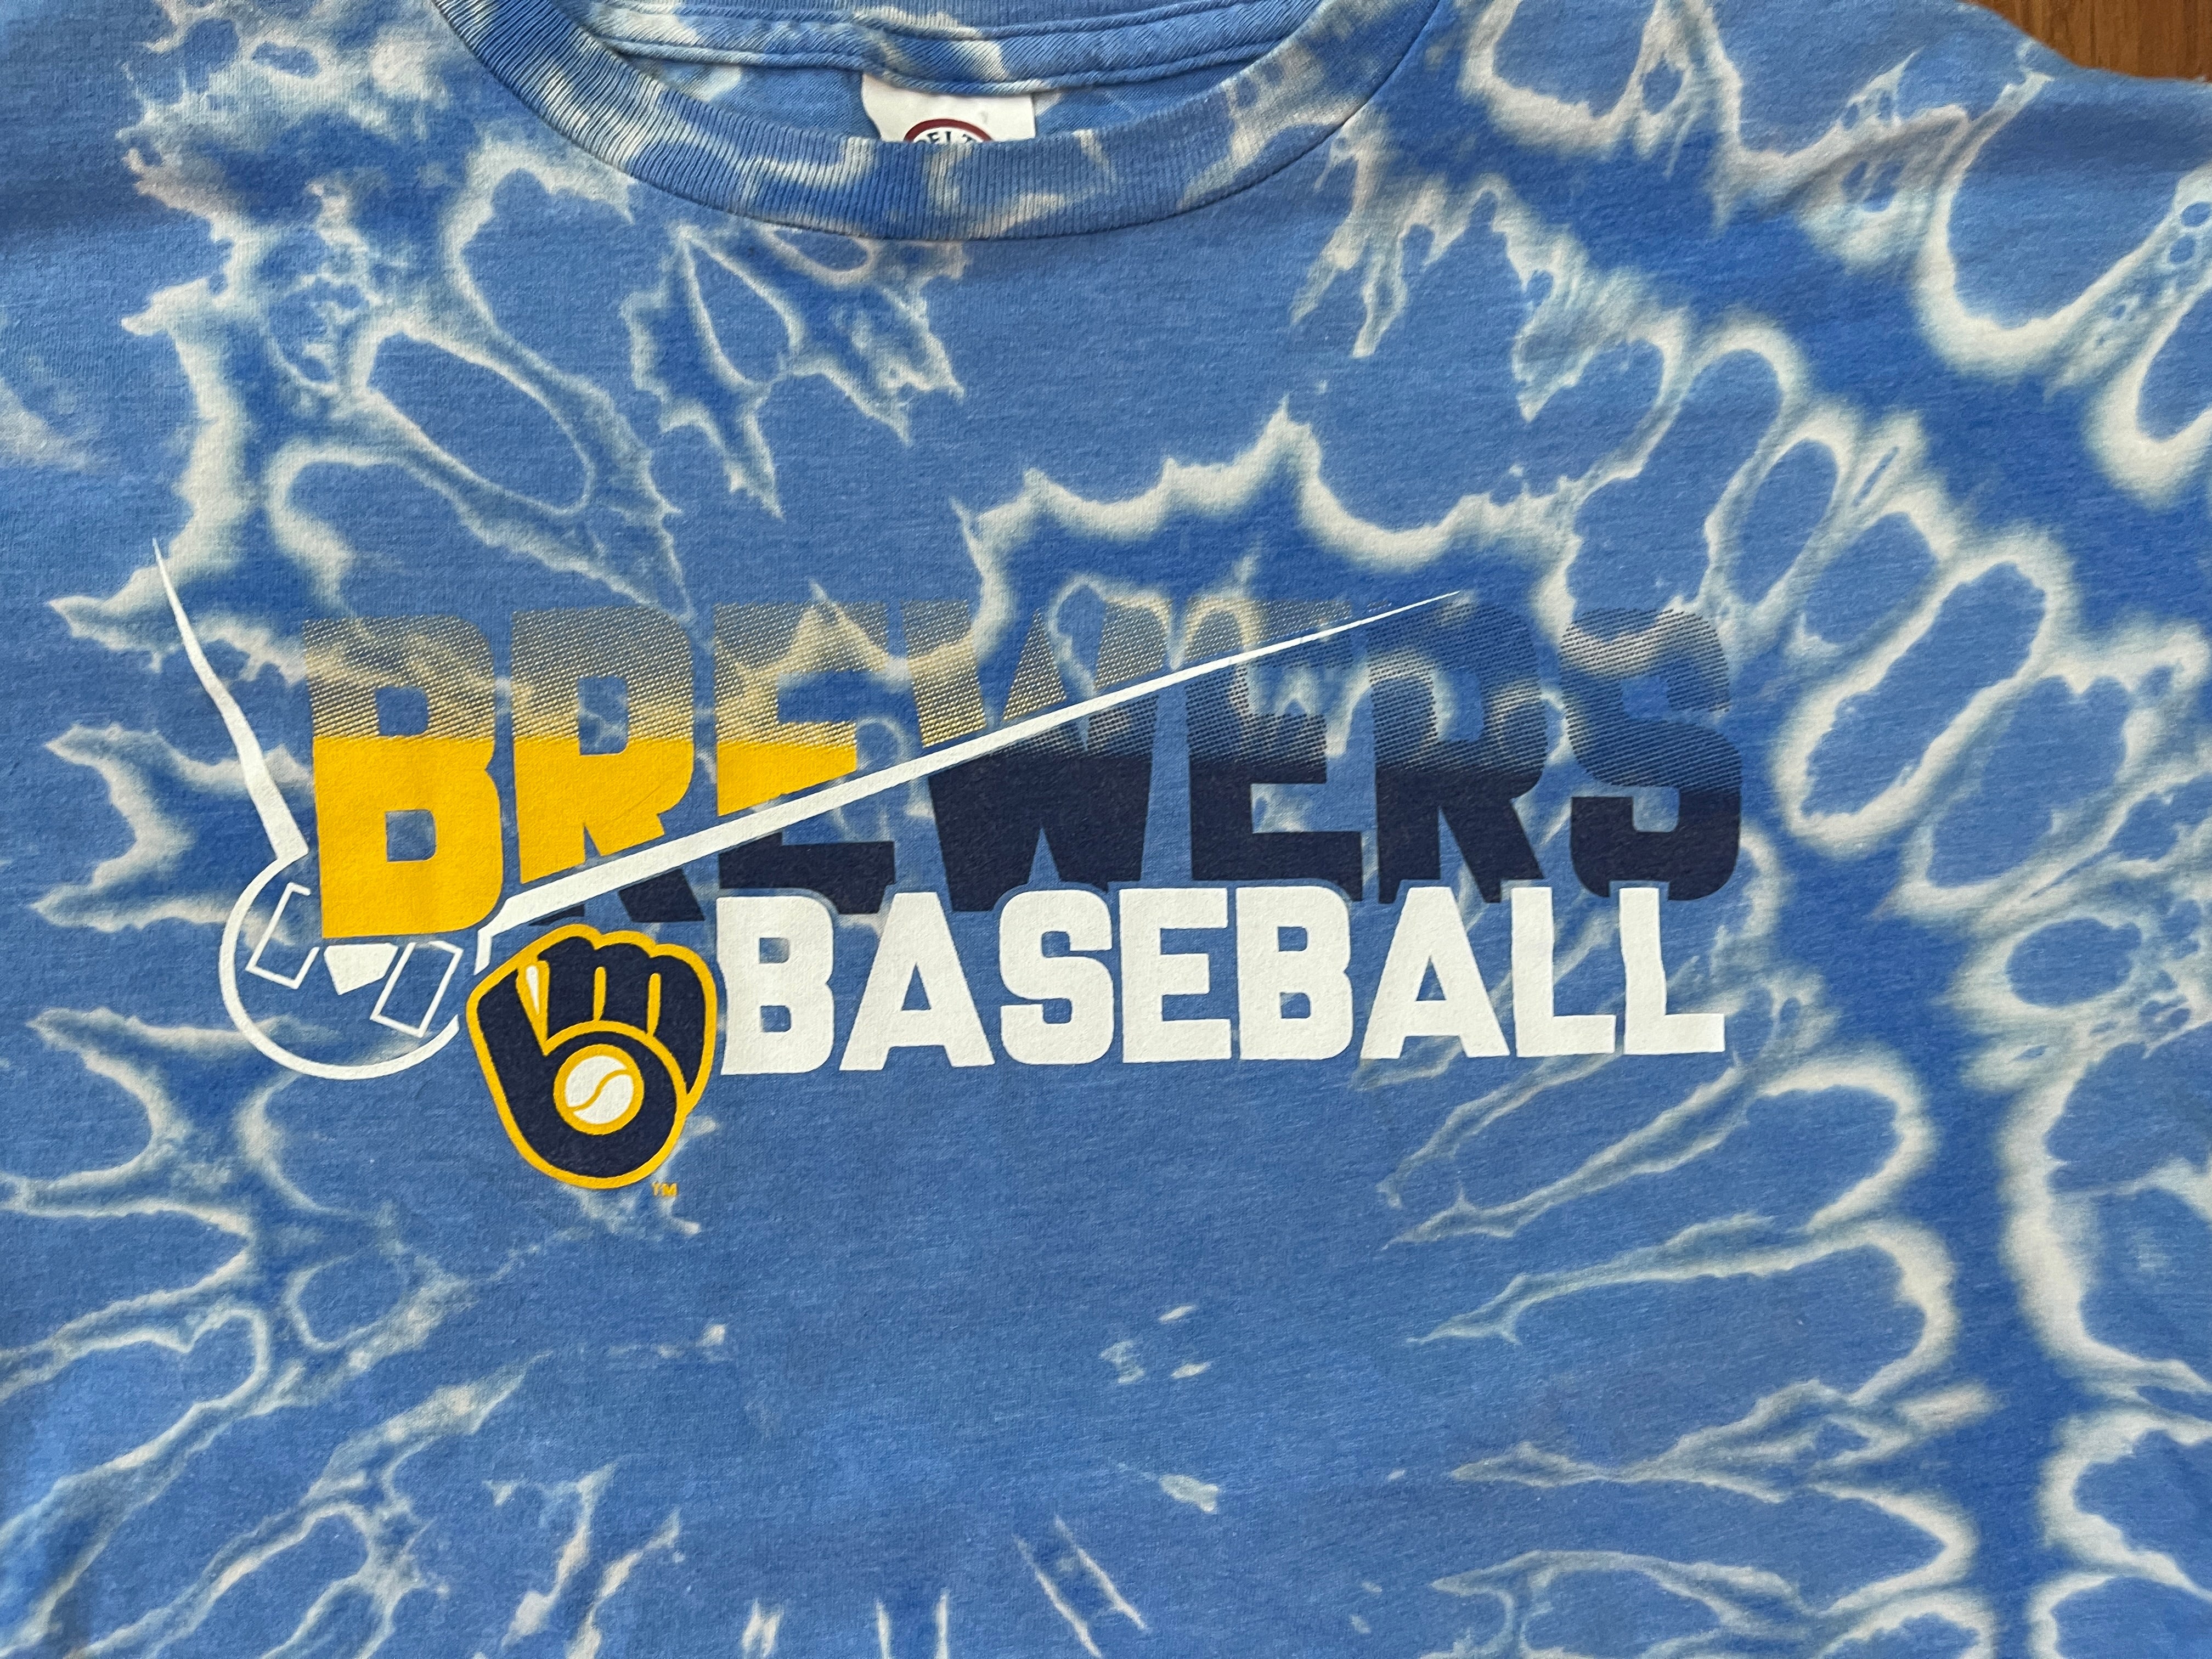 CustomCat Milwaukee Brewers Retro MLB Tie Dye T-Shirt SpiderRoyal / S